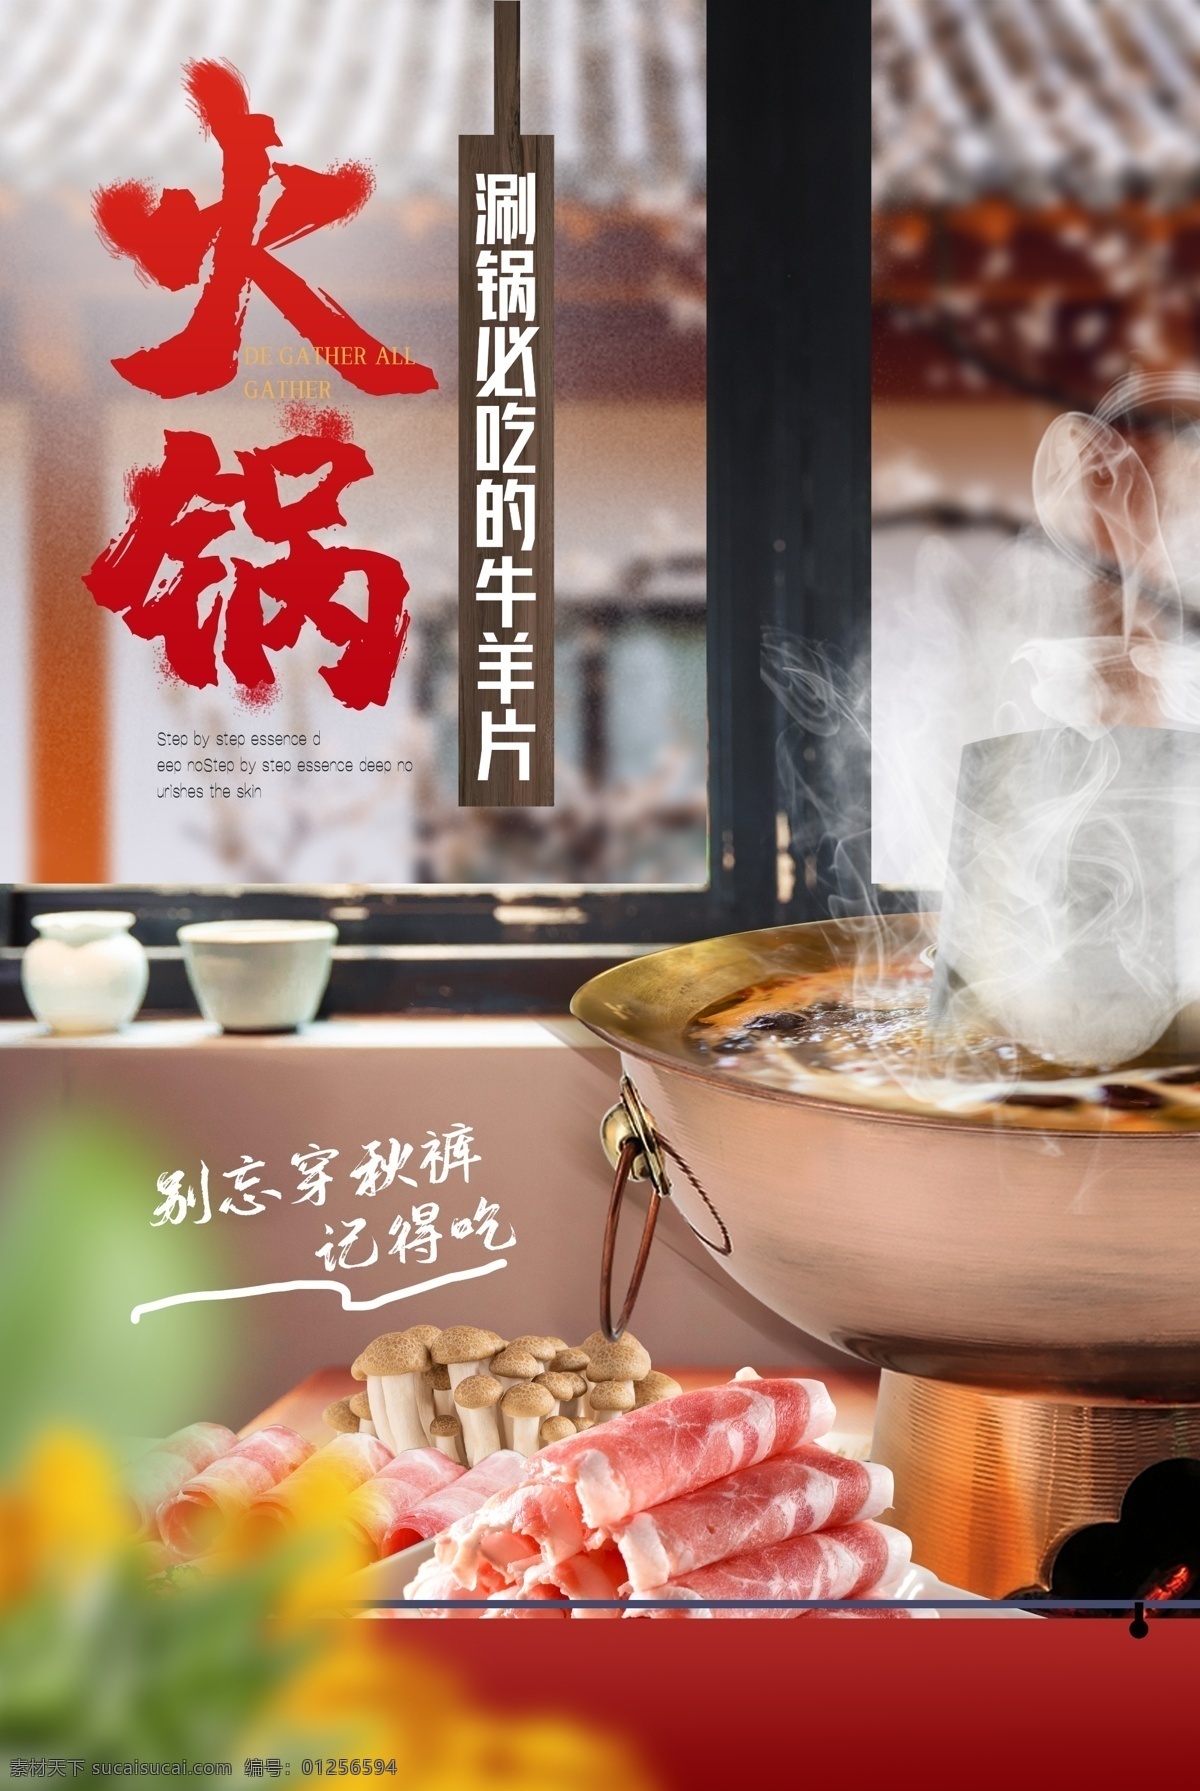 火锅 美食 食 材 活动 宣传海报 素材图片 食材 宣传 海报 餐饮美食 类